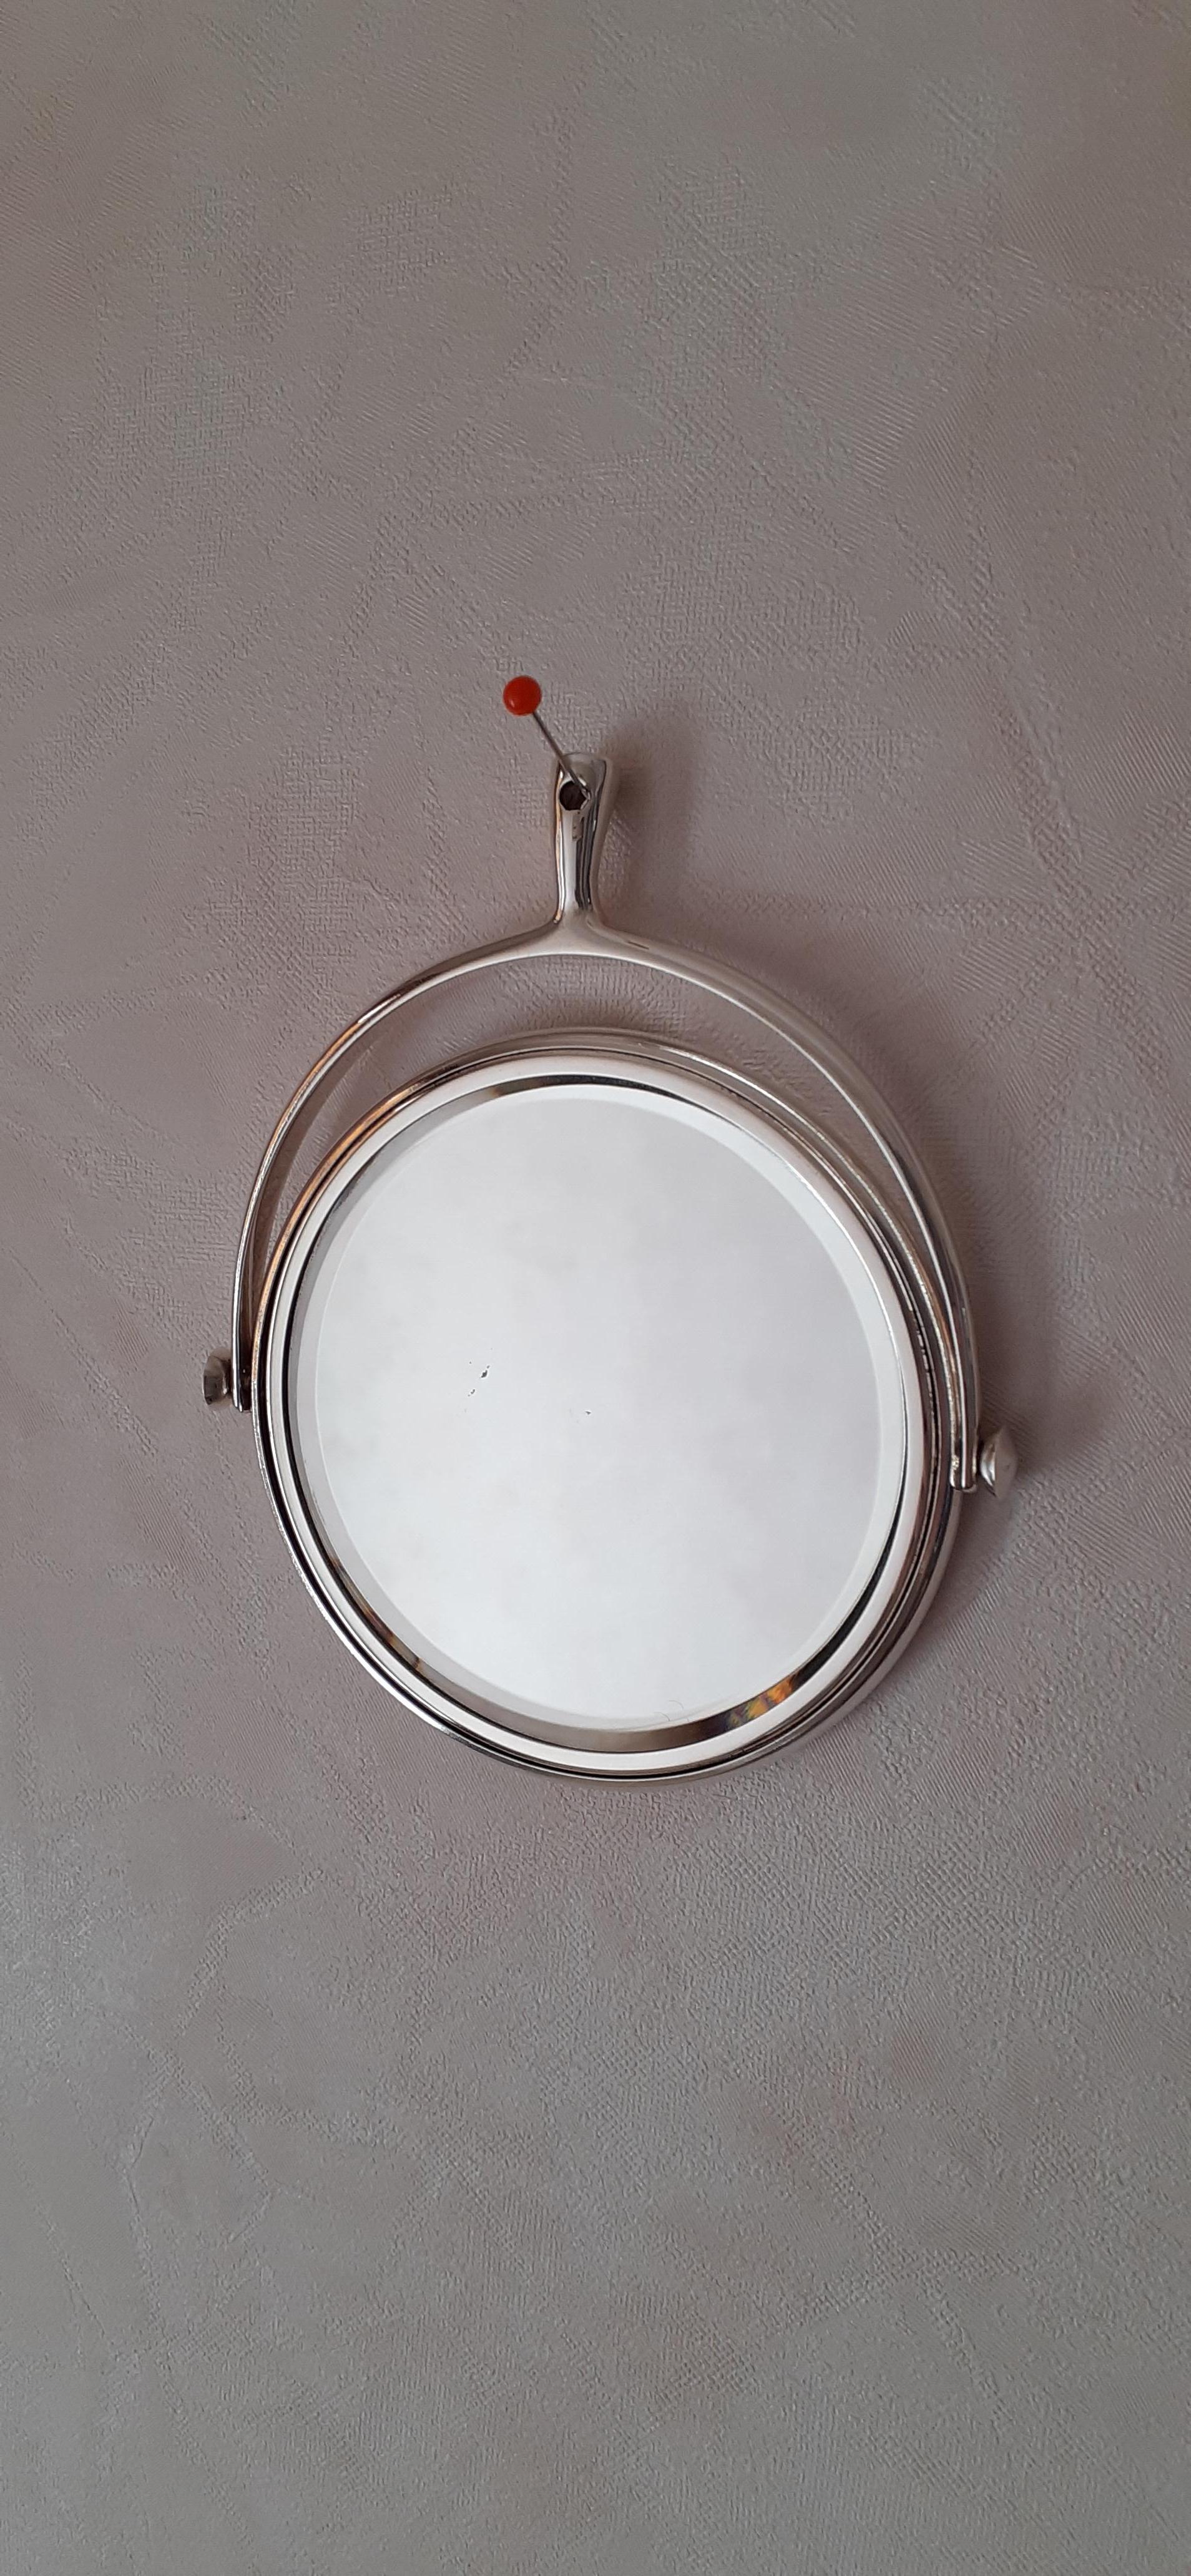 Hermès Vintage Stirrup Shaped in Guilloché Silvered Pocket Mirror for Handbag For Sale 7